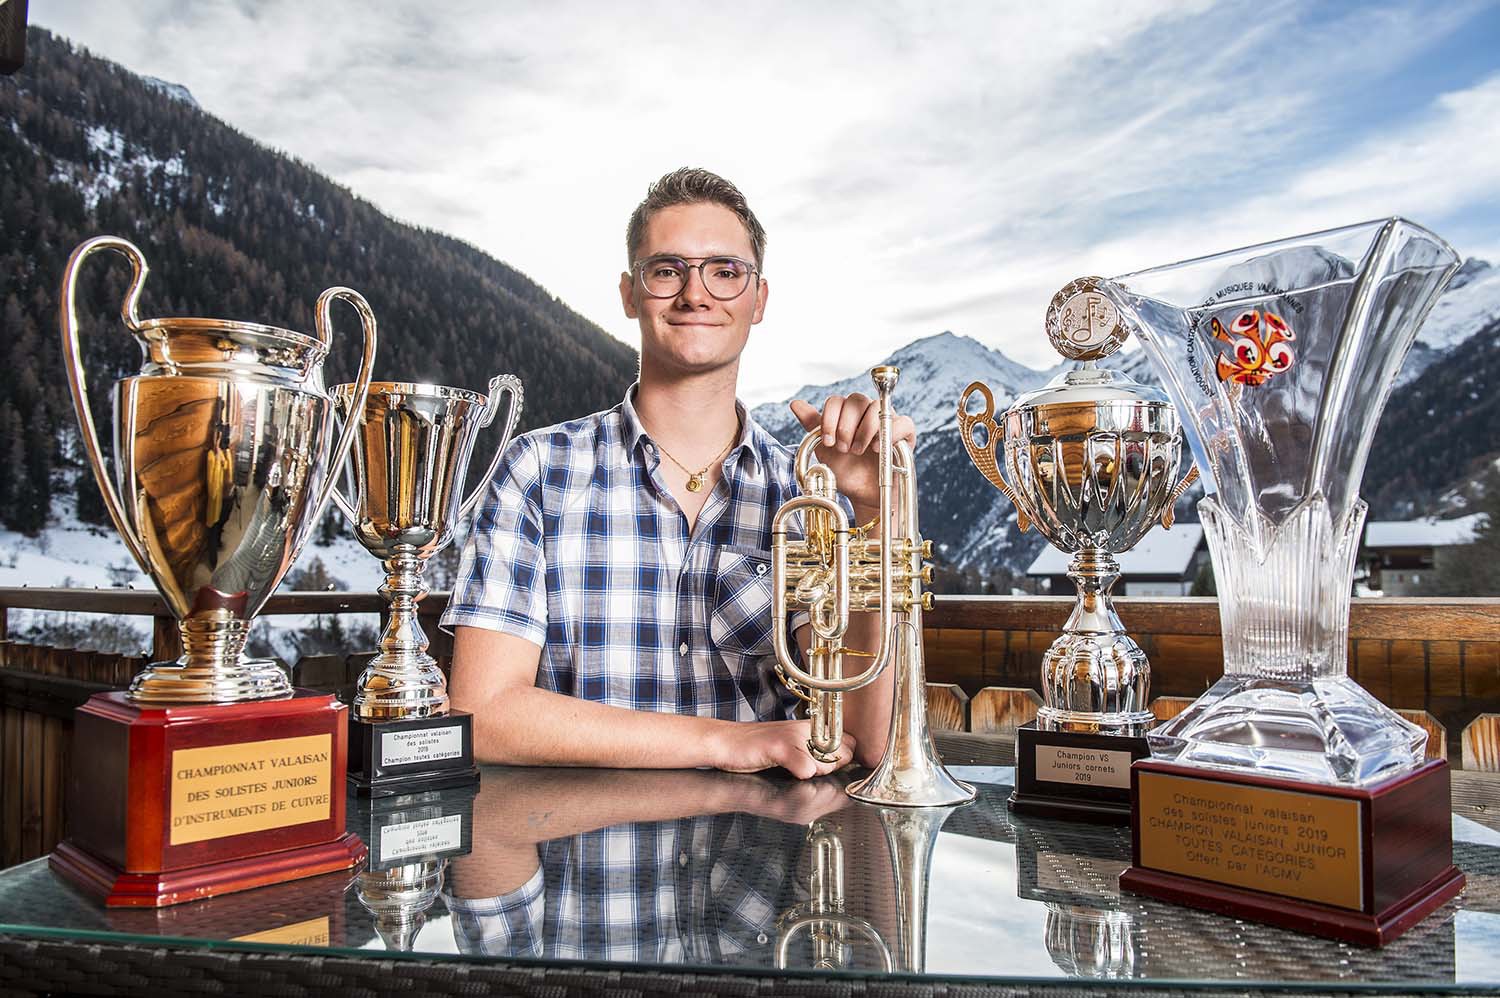 Champion valaisan des solistes 2018 et 2019, Cédric Ritler participera à la "Nuit des Champions" aux côtés de dix autres anciens vainqueurs du concours.